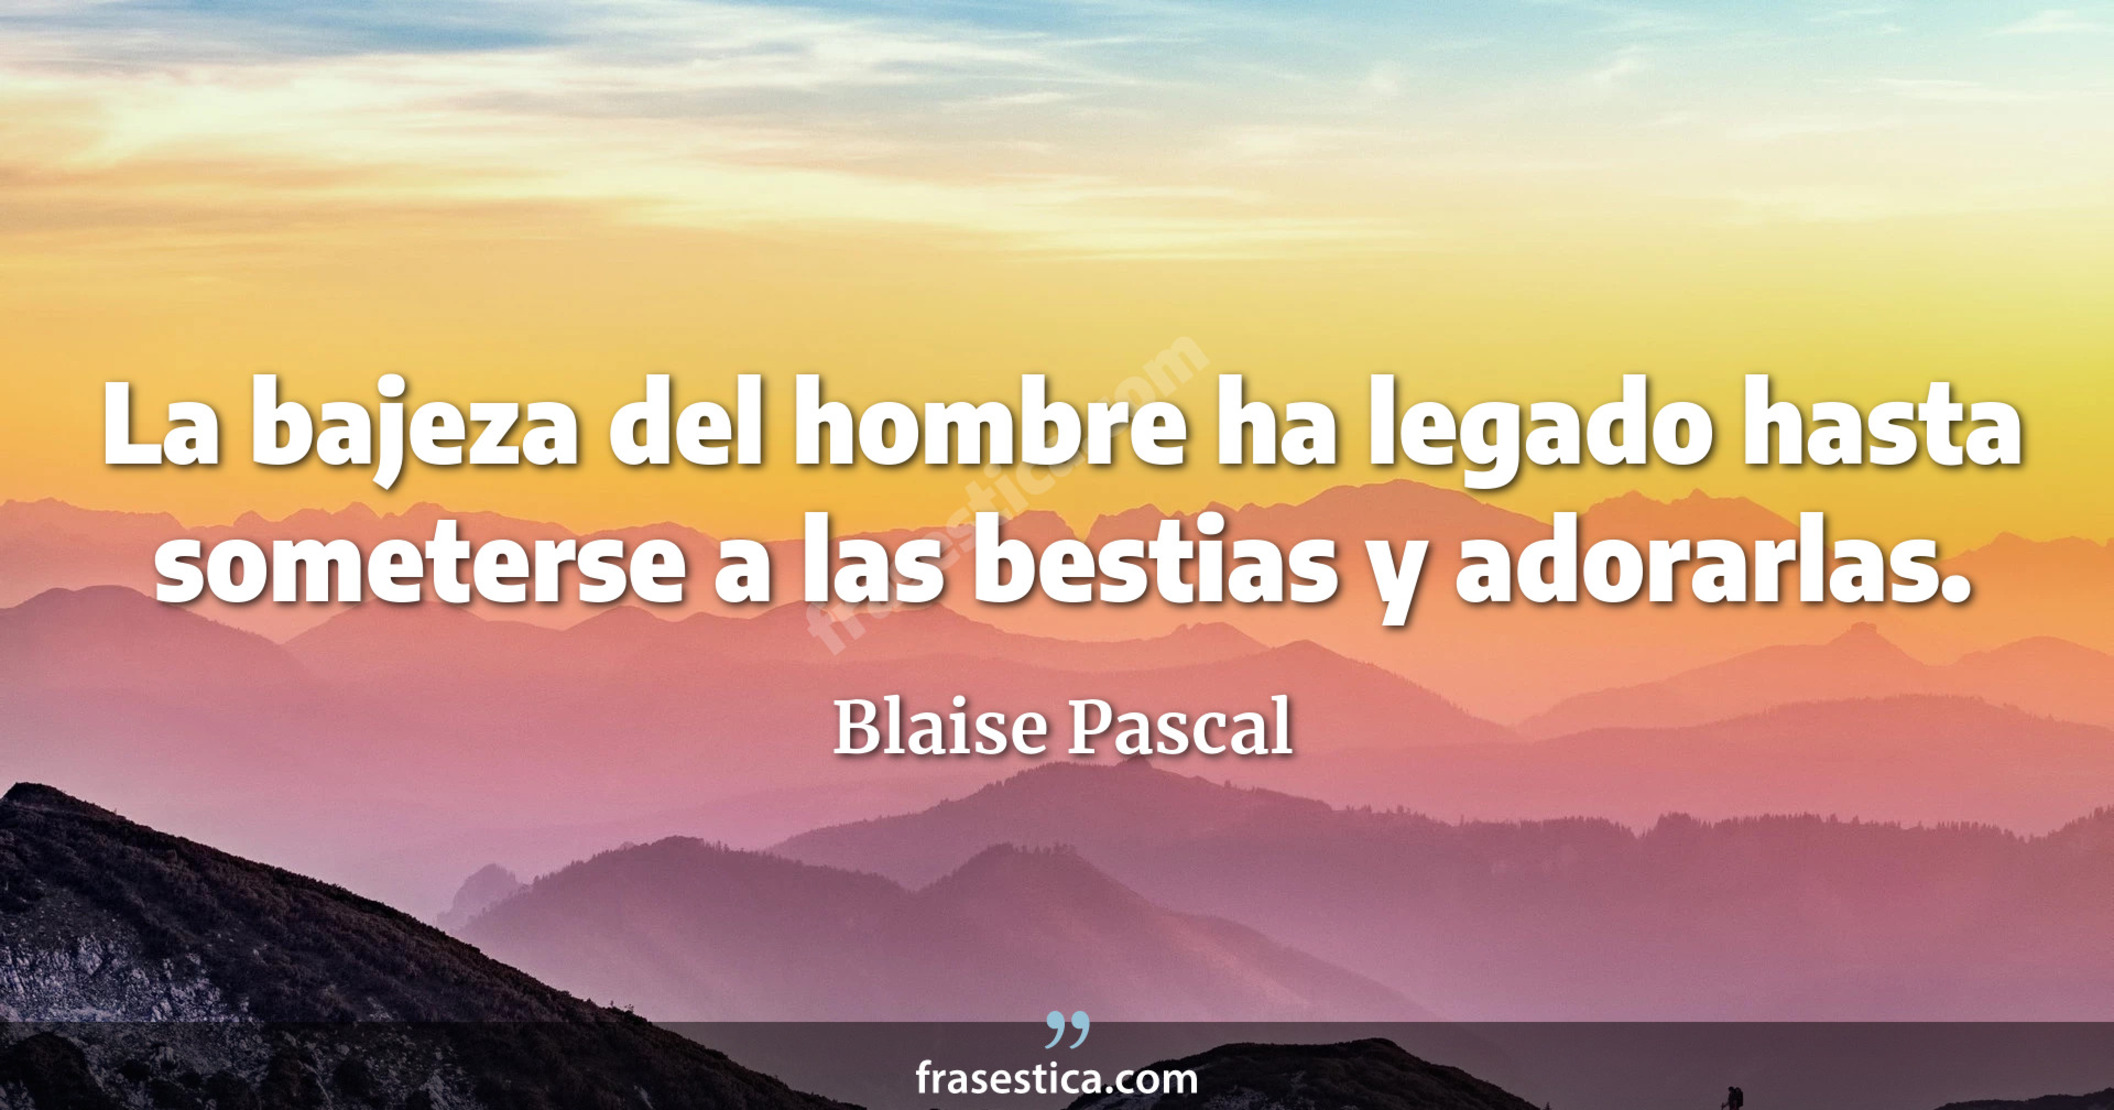 La bajeza del hombre ha legado hasta someterse a las bestias y adorarlas. - Blaise Pascal